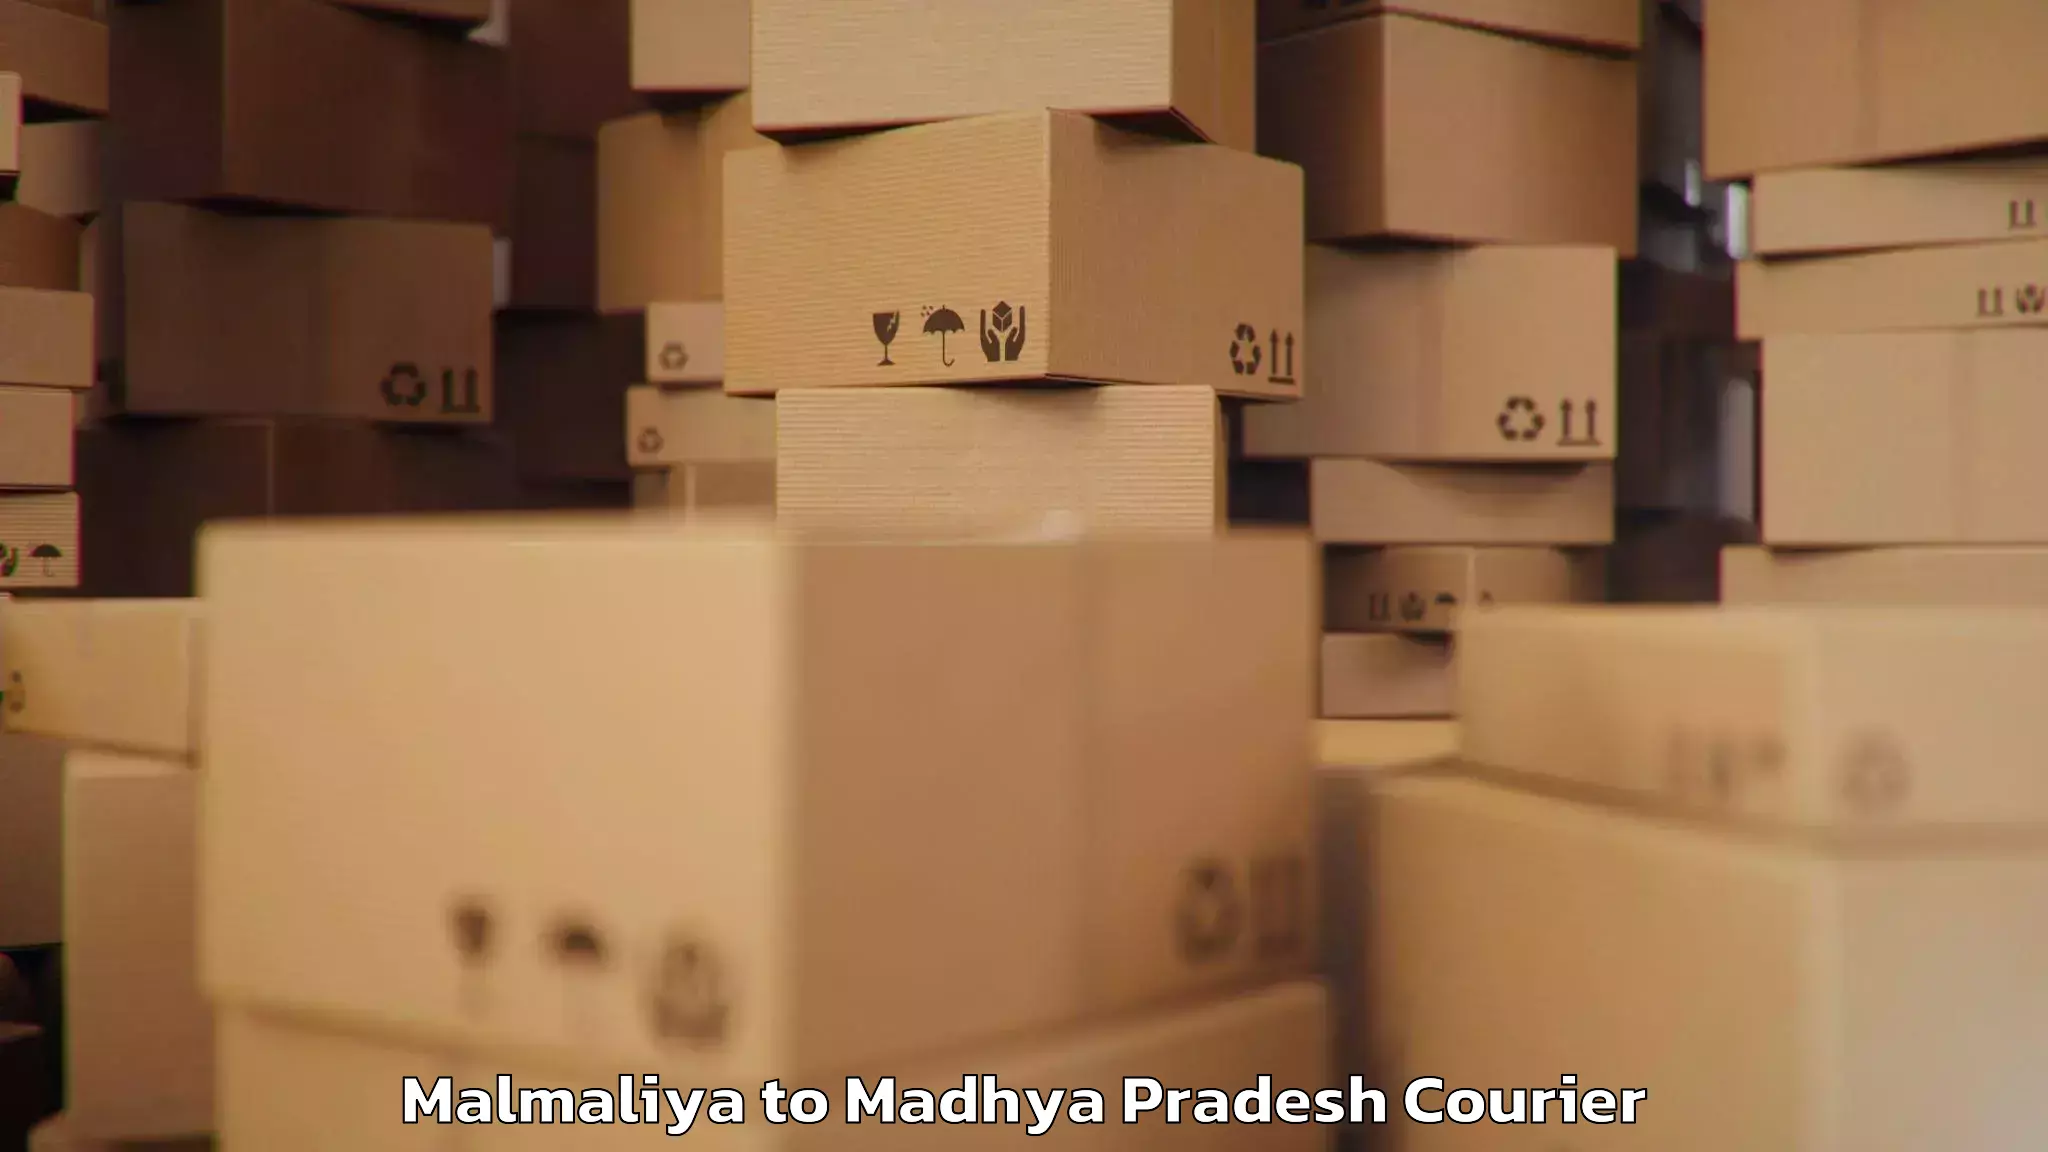 Personal effects shipping Malmaliya to Madhya Pradesh